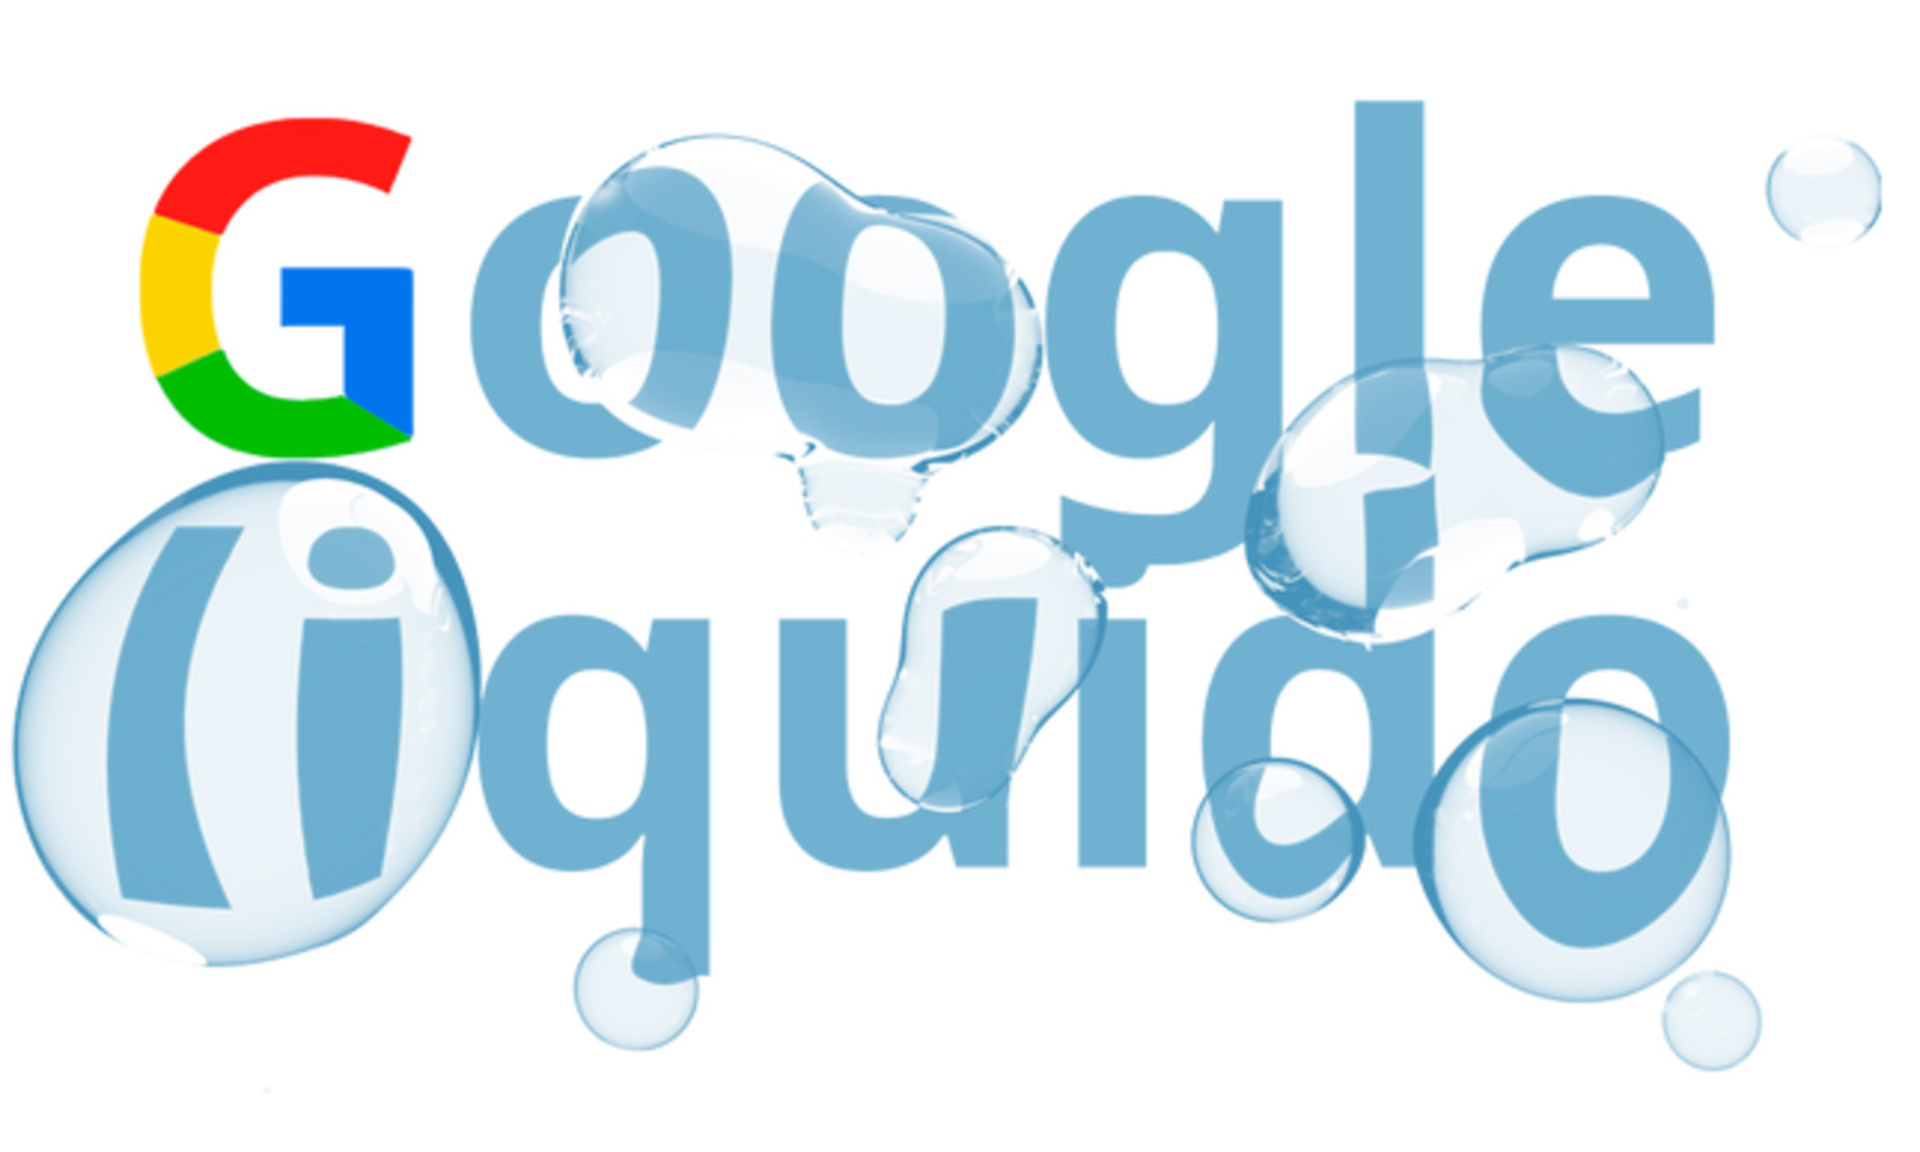 Google Liquido di Giorgio Taverniti: il libro per un internet migliore